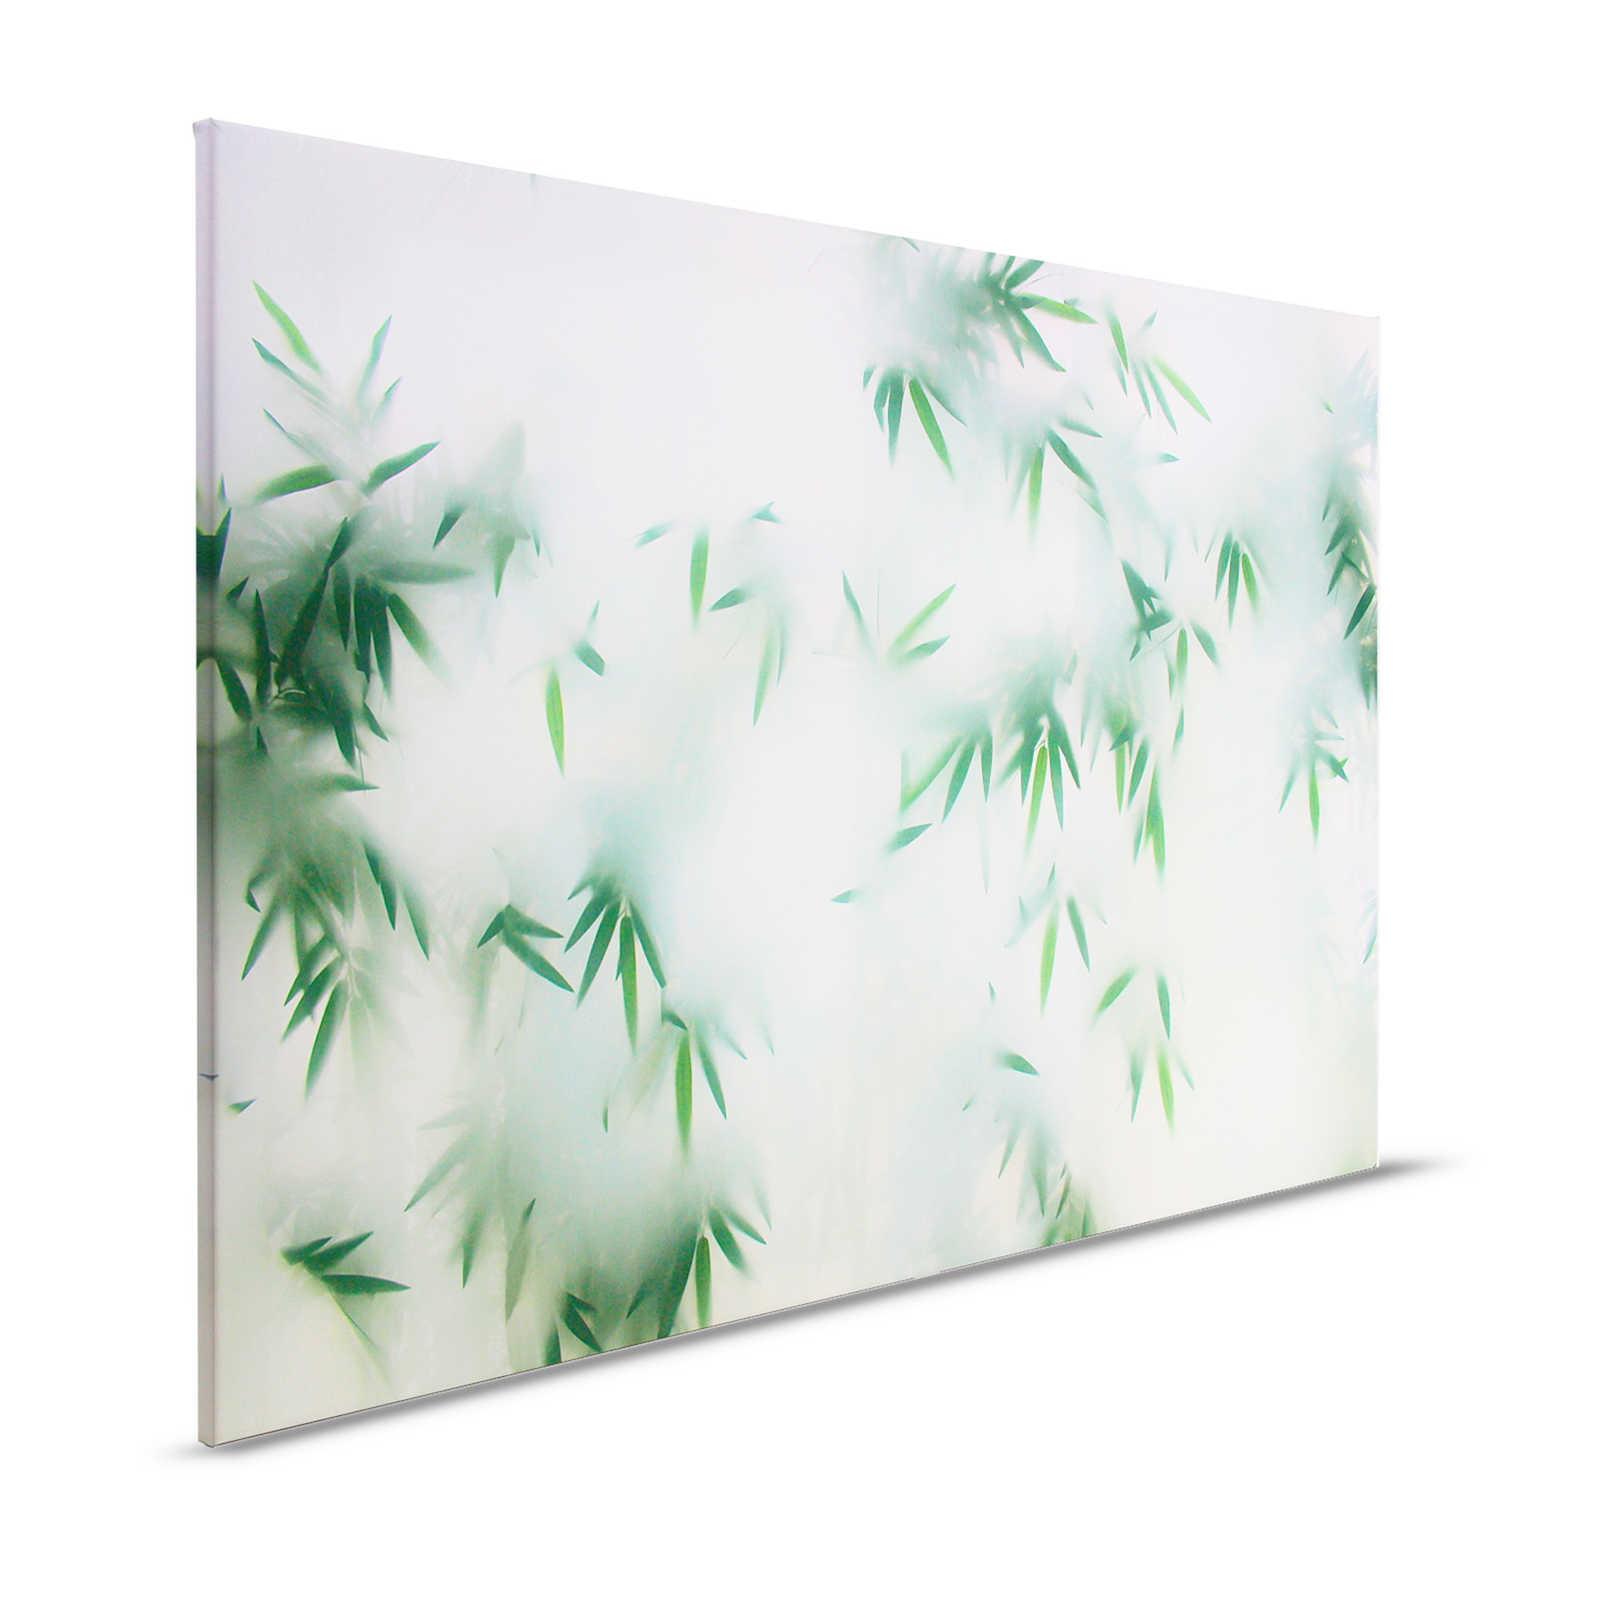 Panda Paradise 3 - Bladeren Canvas schilderij Bamboe in de mist - 1.20 m x 0.80 m
